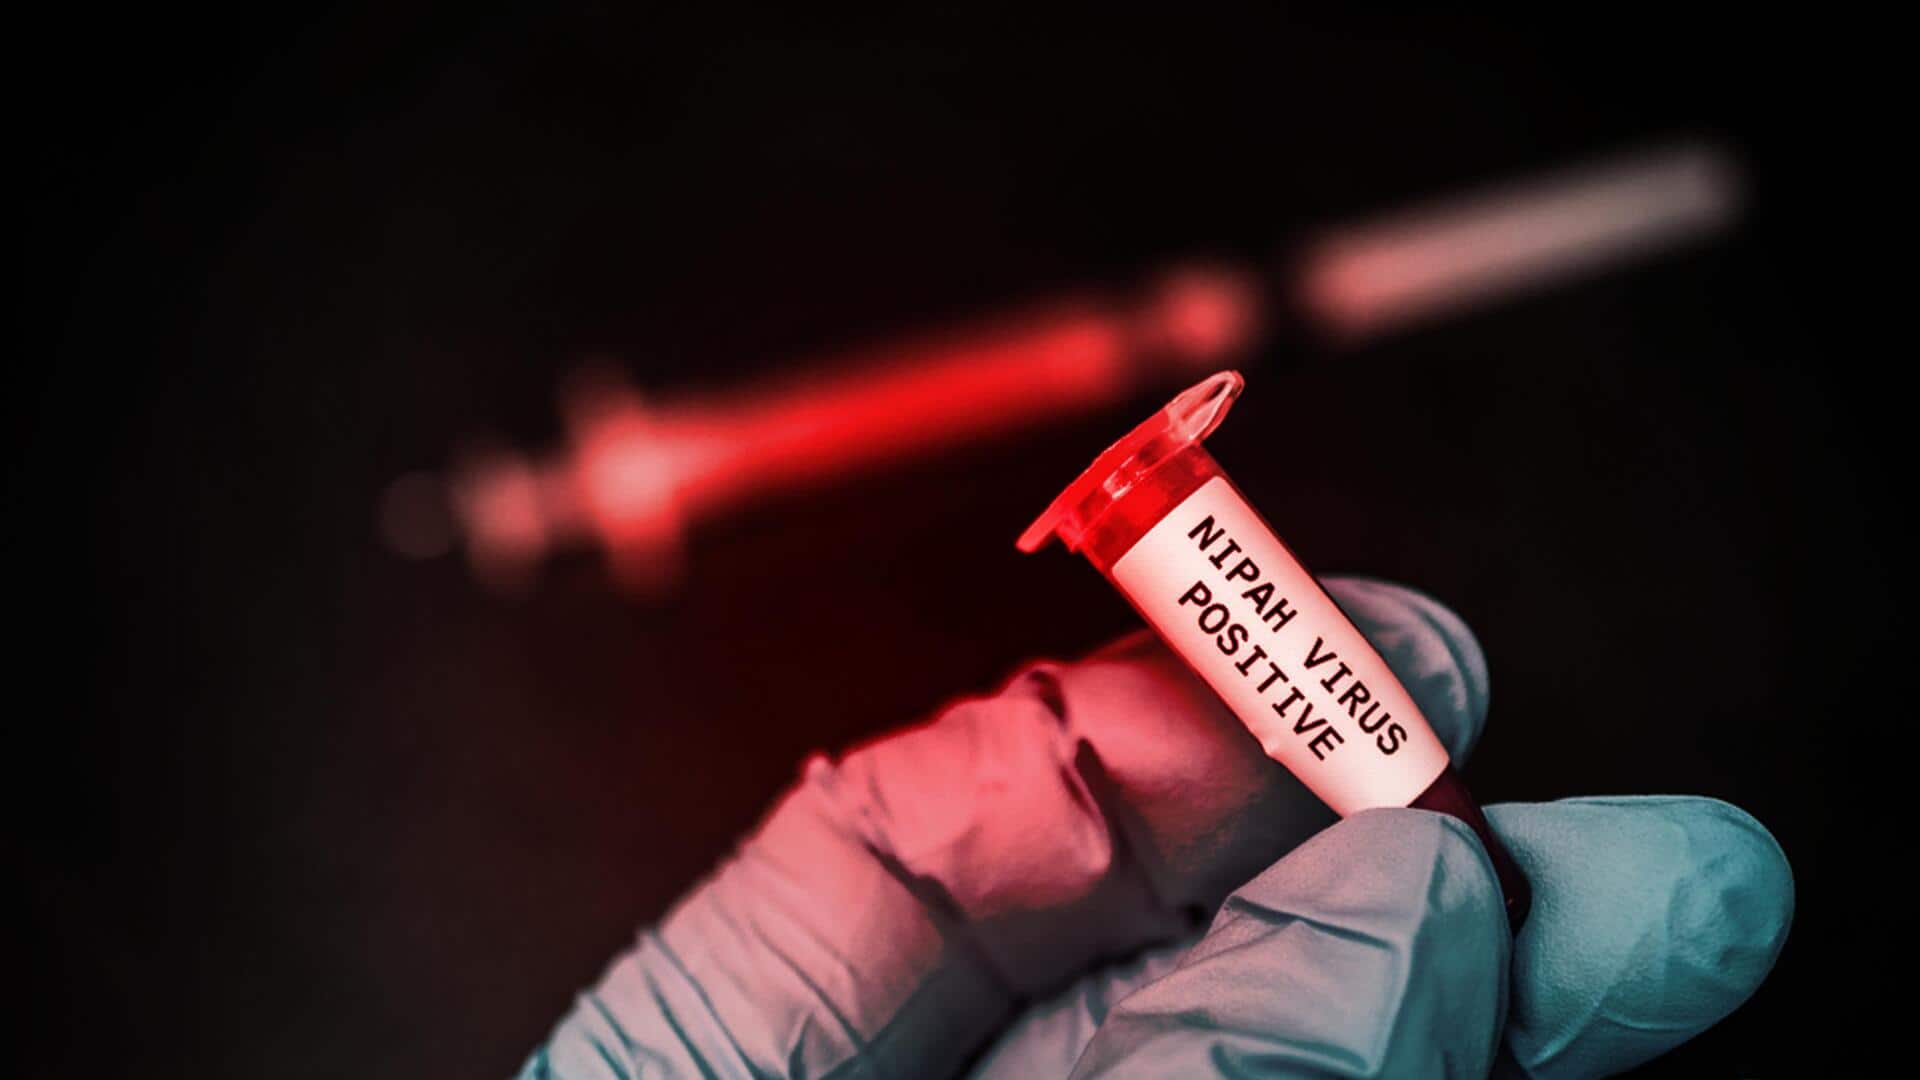 निपाह वायरस की पहली वैक्सीन की उम्मीदें जगीं, ऑक्सफोर्ड विश्वविद्यालय ने शुरू किए मानव परीक्षण